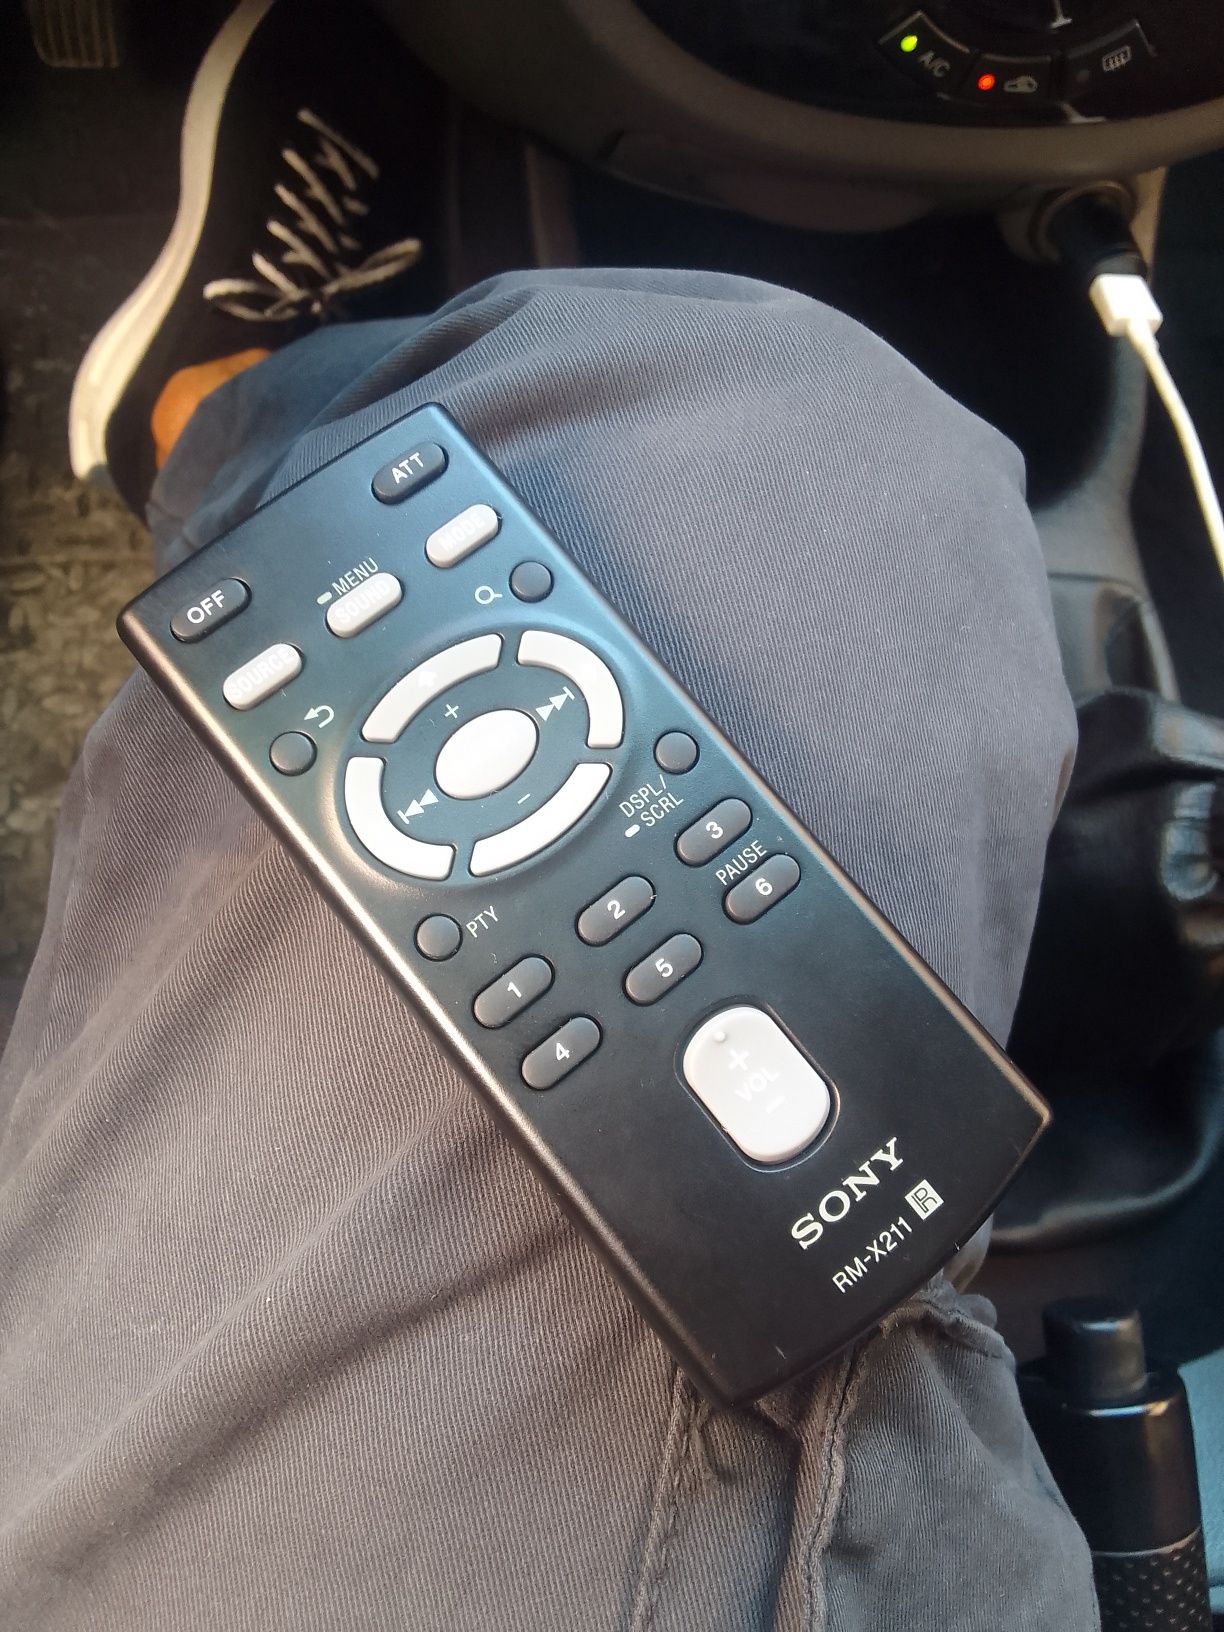 Sony X211 original mafon sotiladi